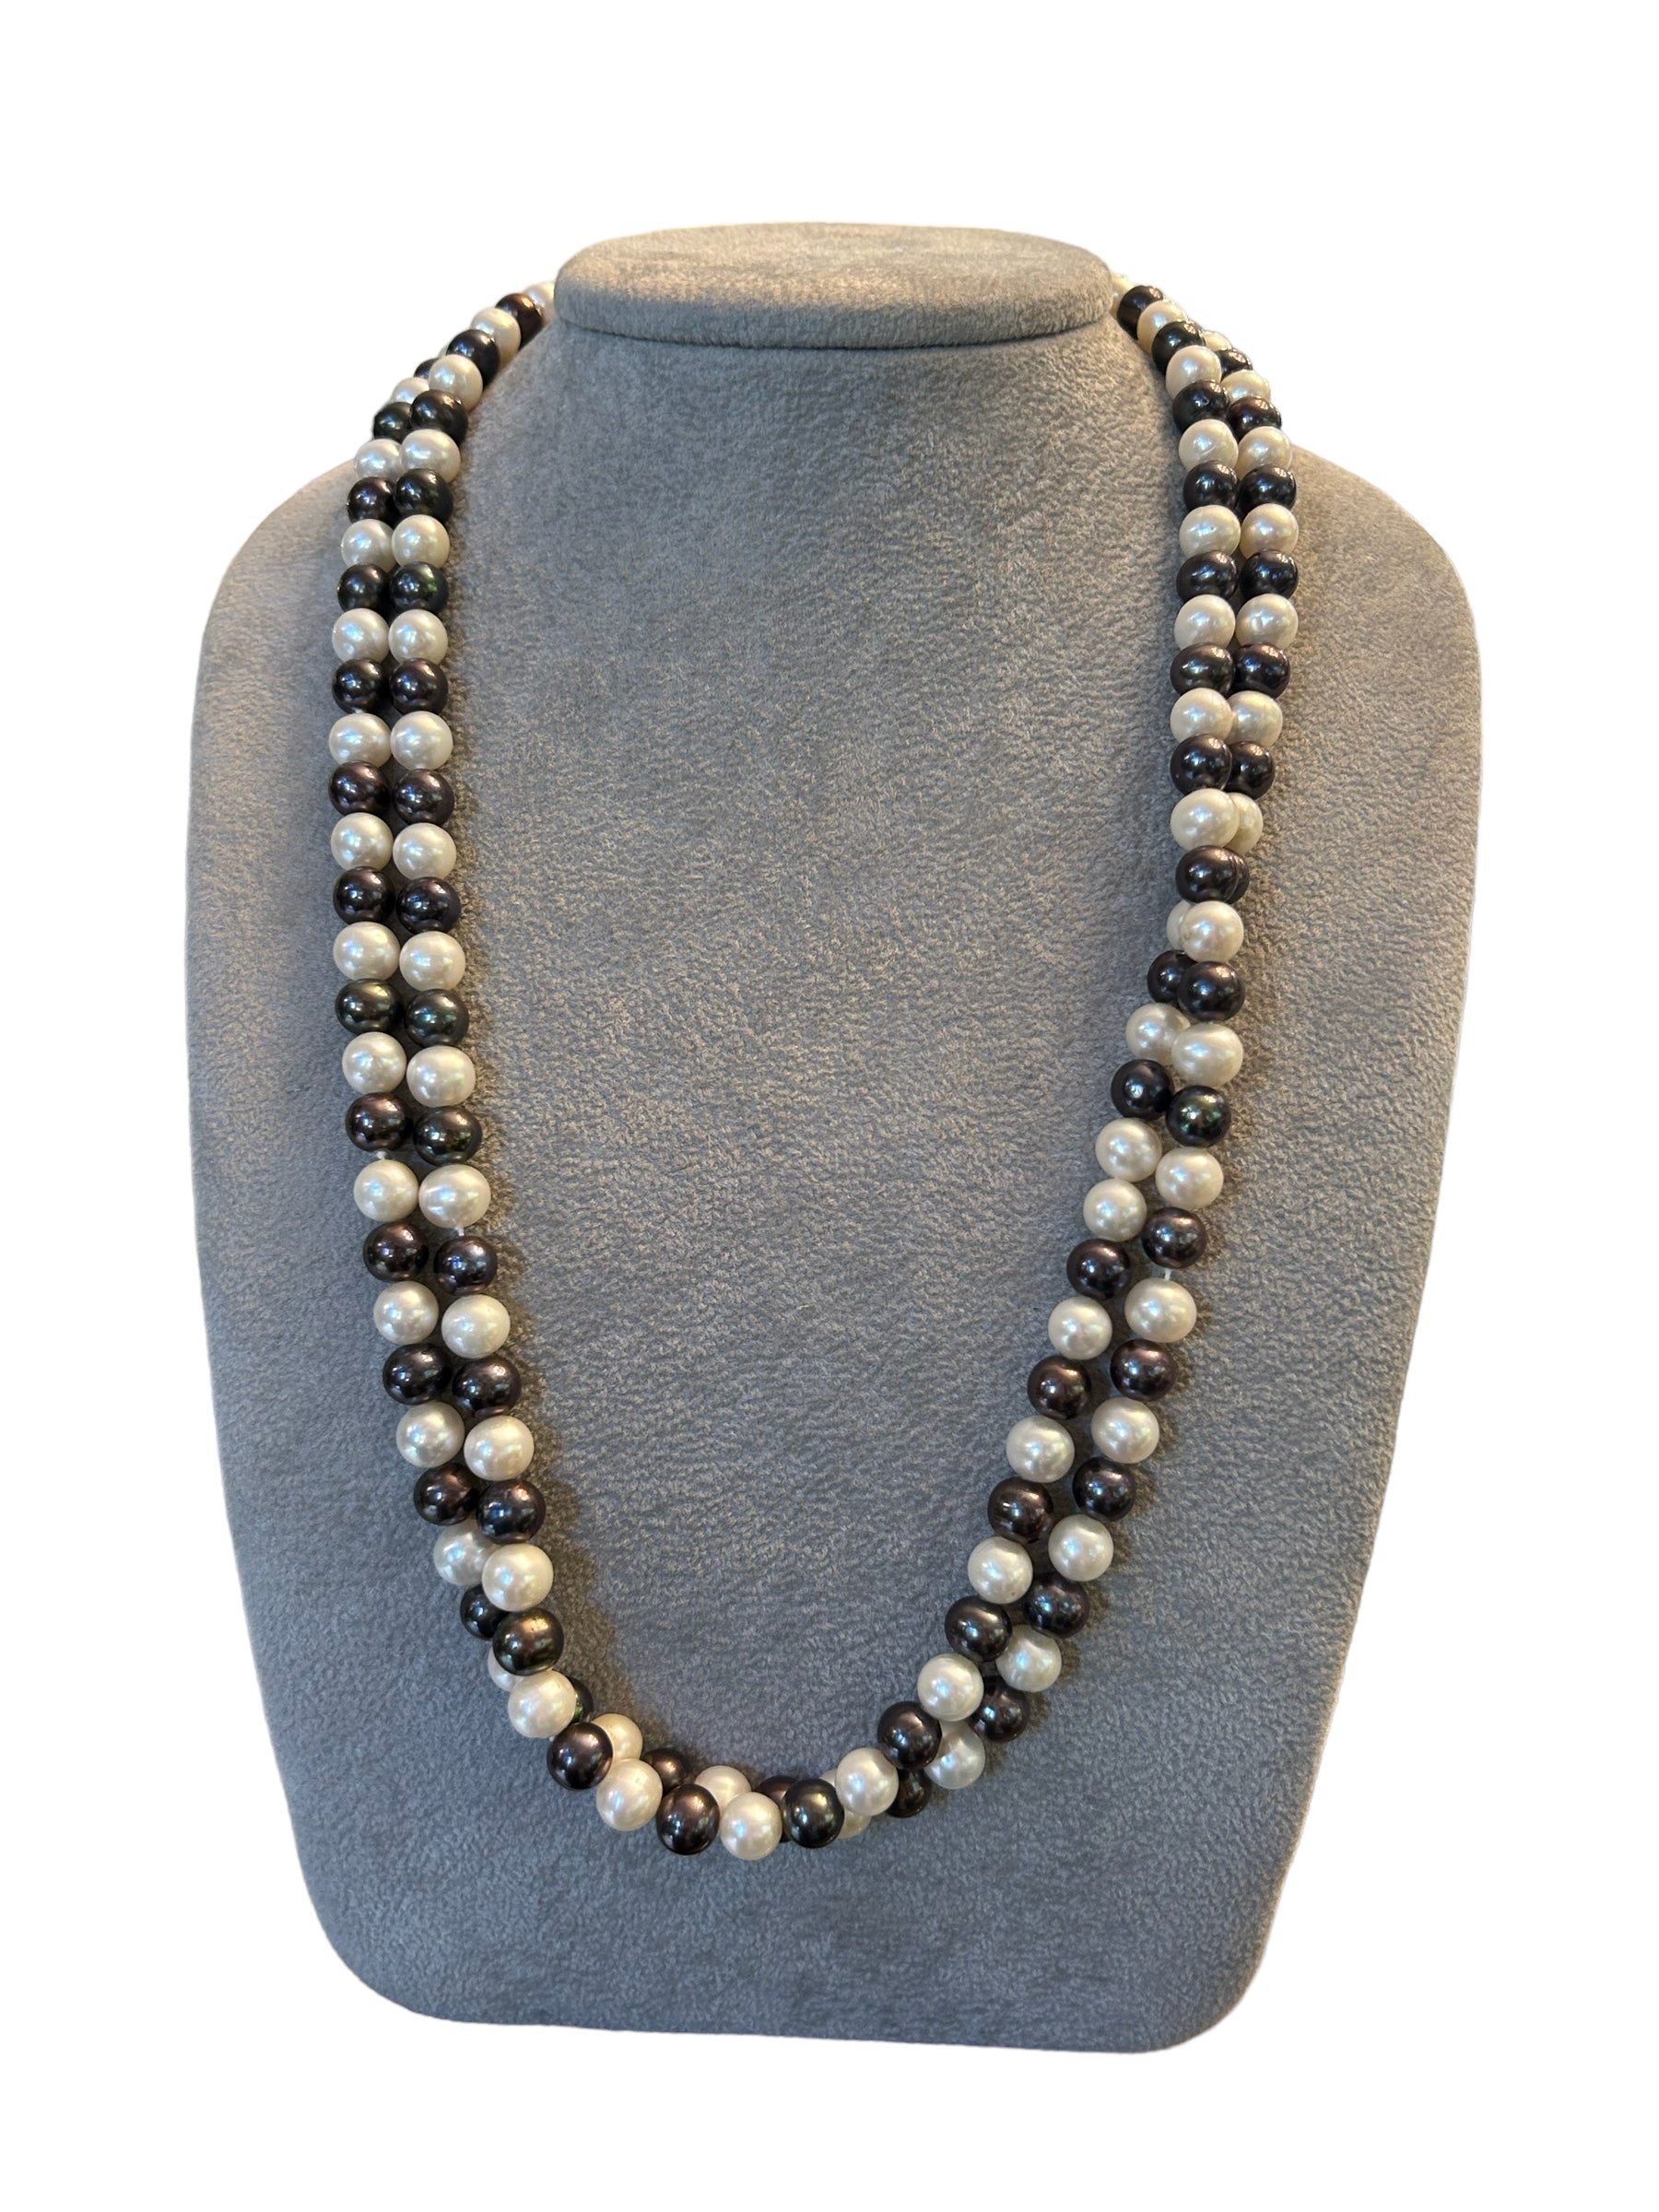 Mazza - Collana perle grigie Tahiti e perle bianche Fresh Water, chiusura in argento 925  - COL PERLE TAHITI